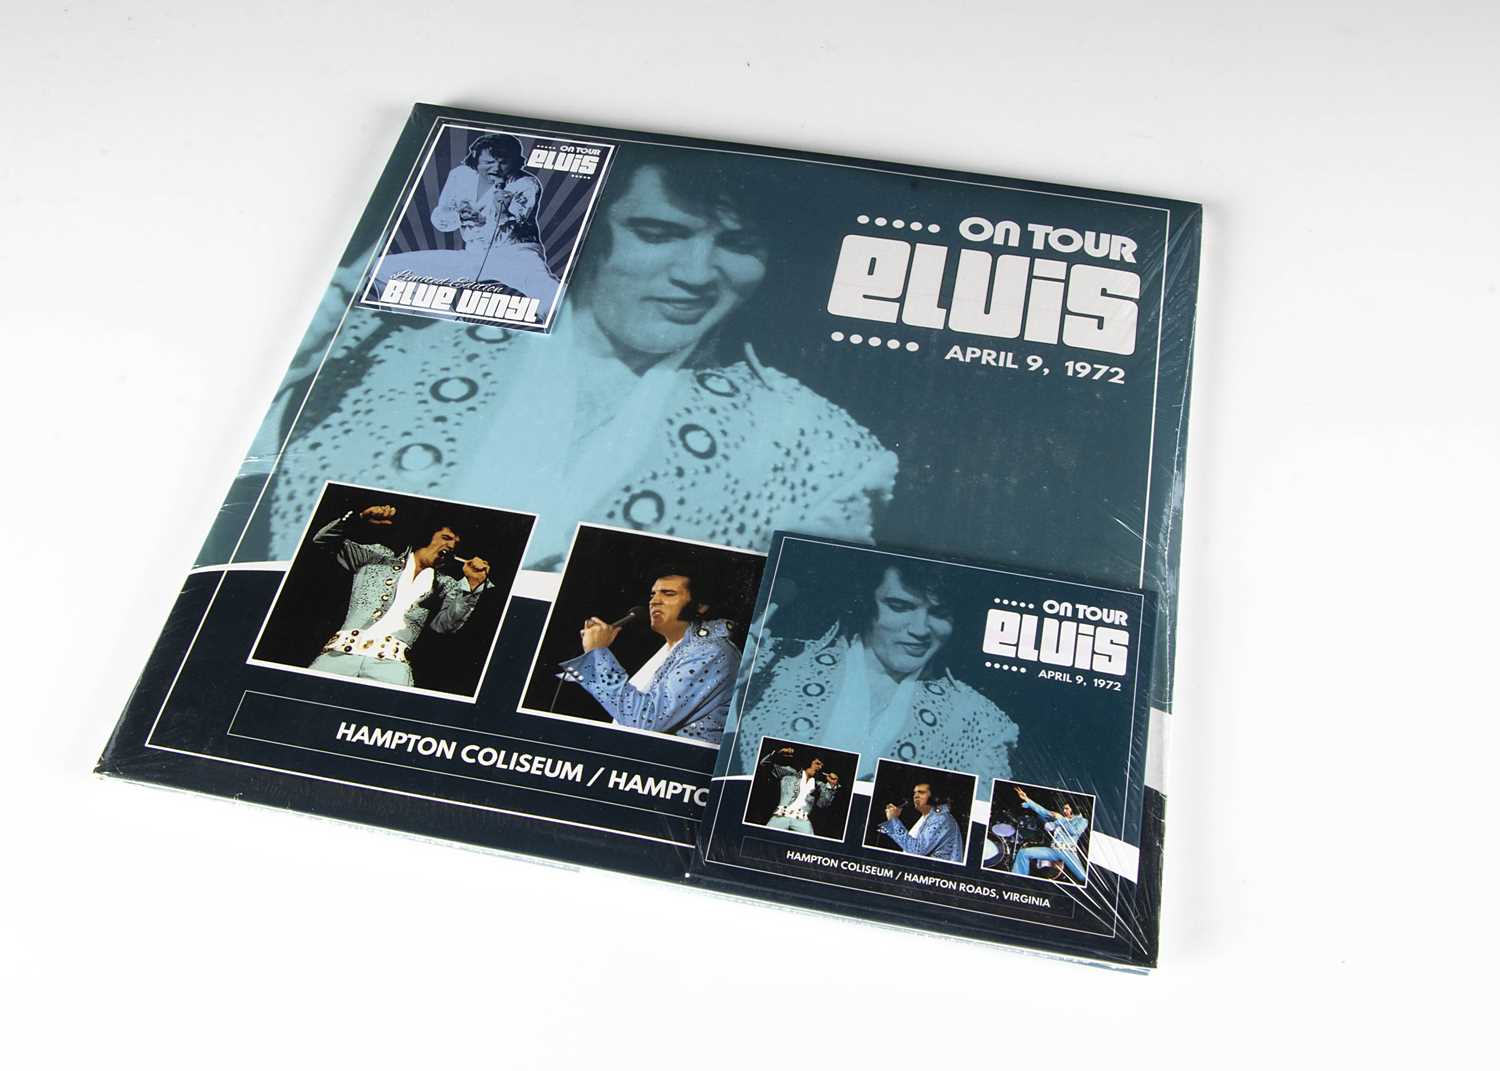 Lot 185 - Elvis Presley LP